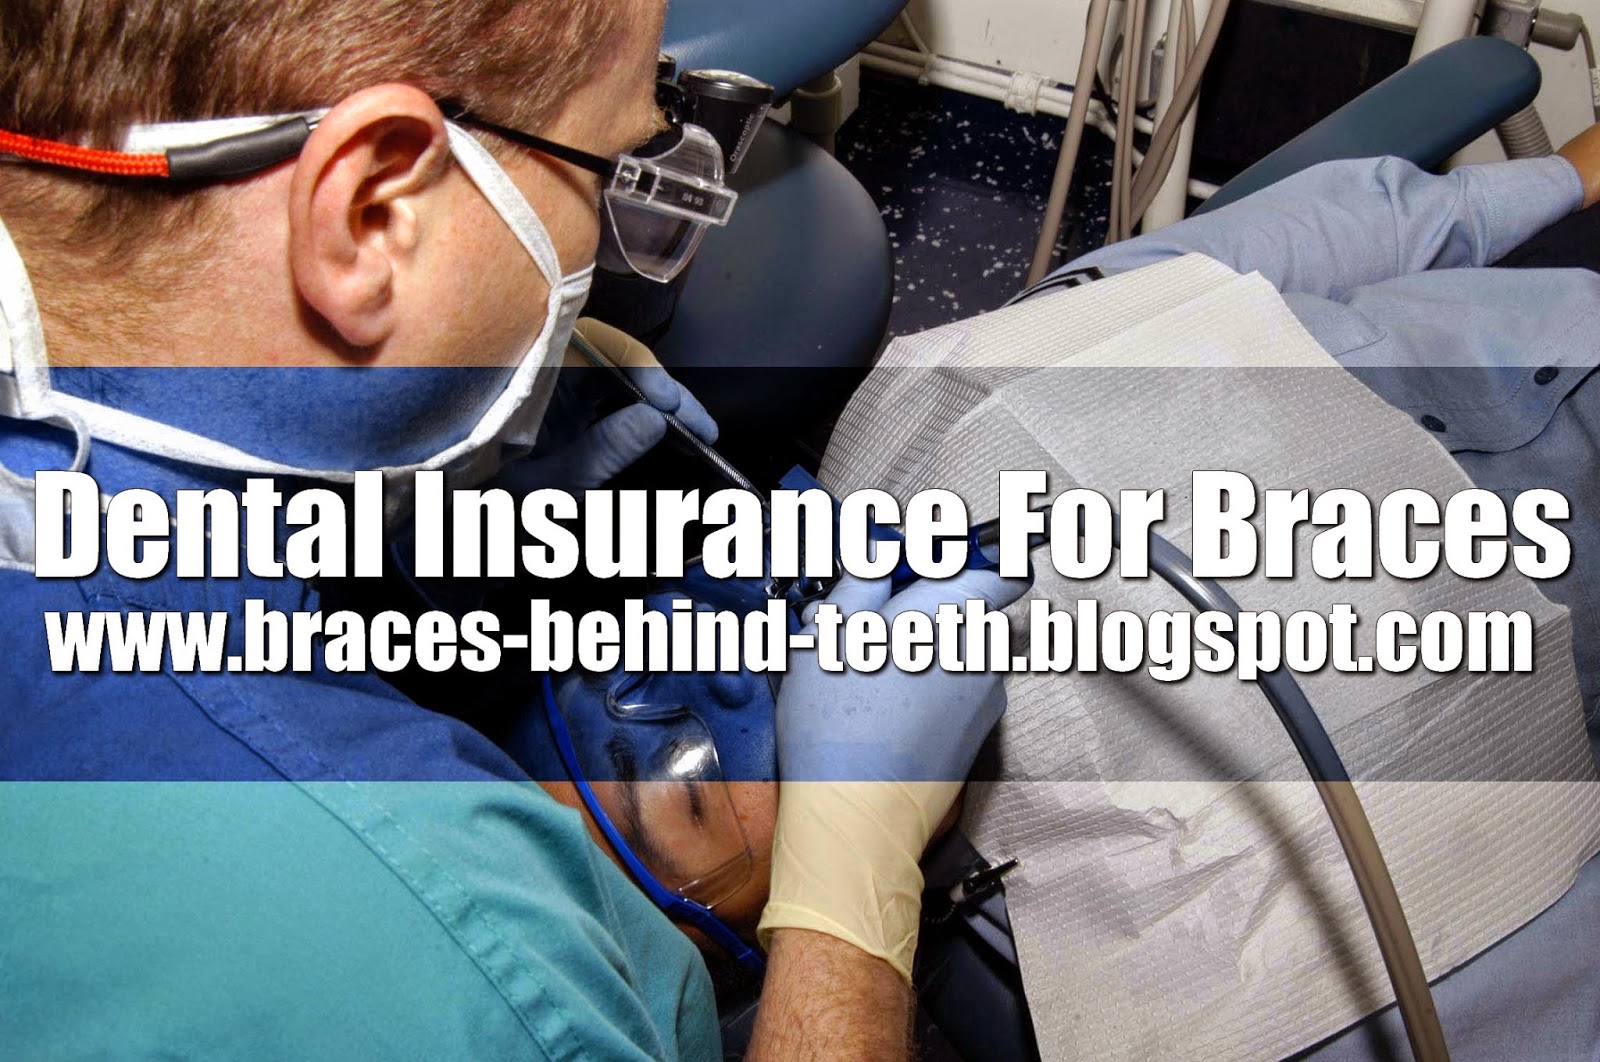 Dental Insurance: Dental Insurance For Braces